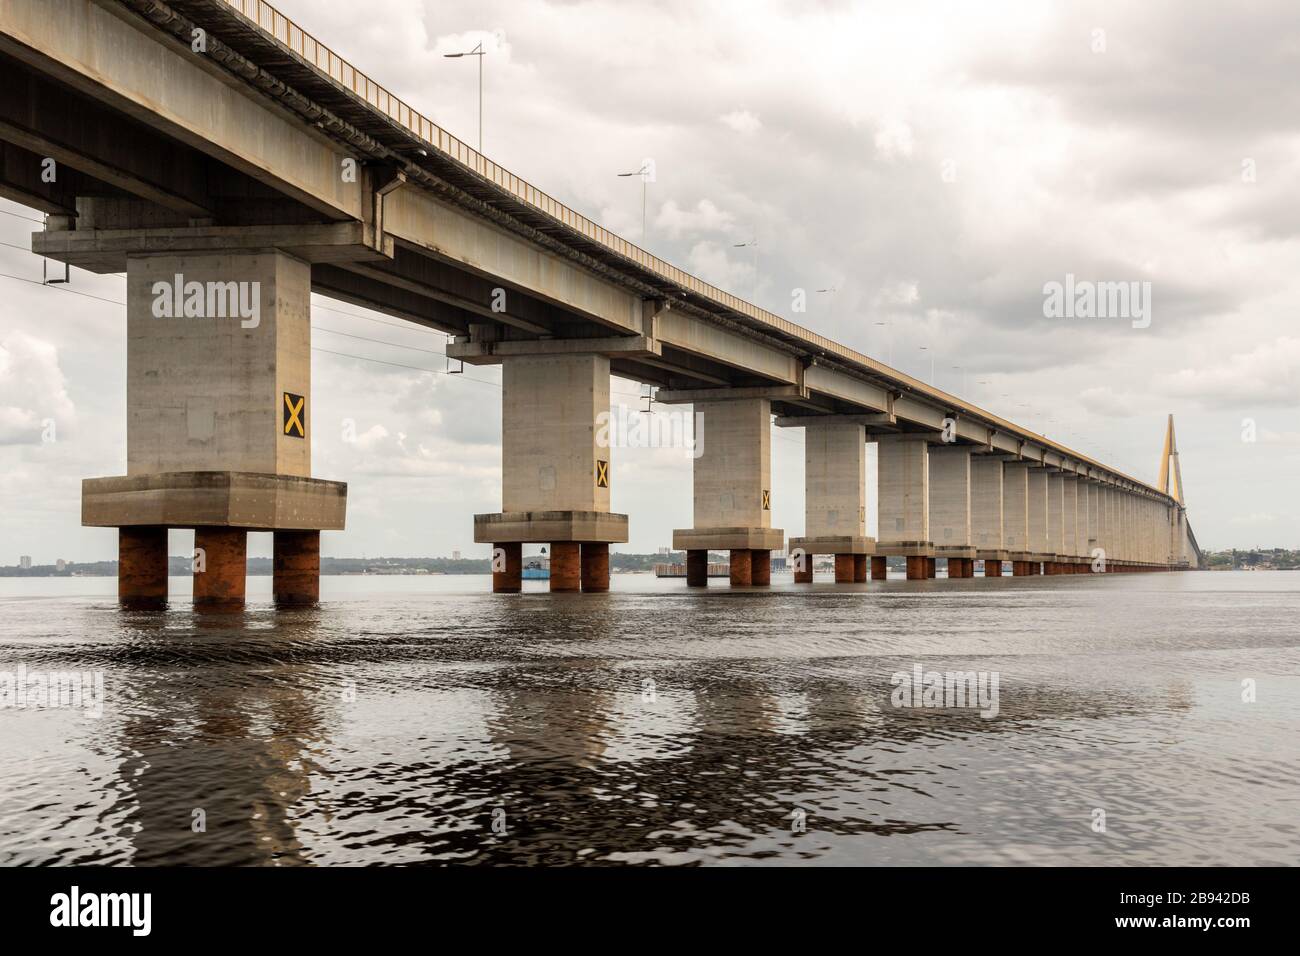 Tolle Brücke über den Amazonas in der Stadt Manaus Brasilien  Stockfotografie - Alamy